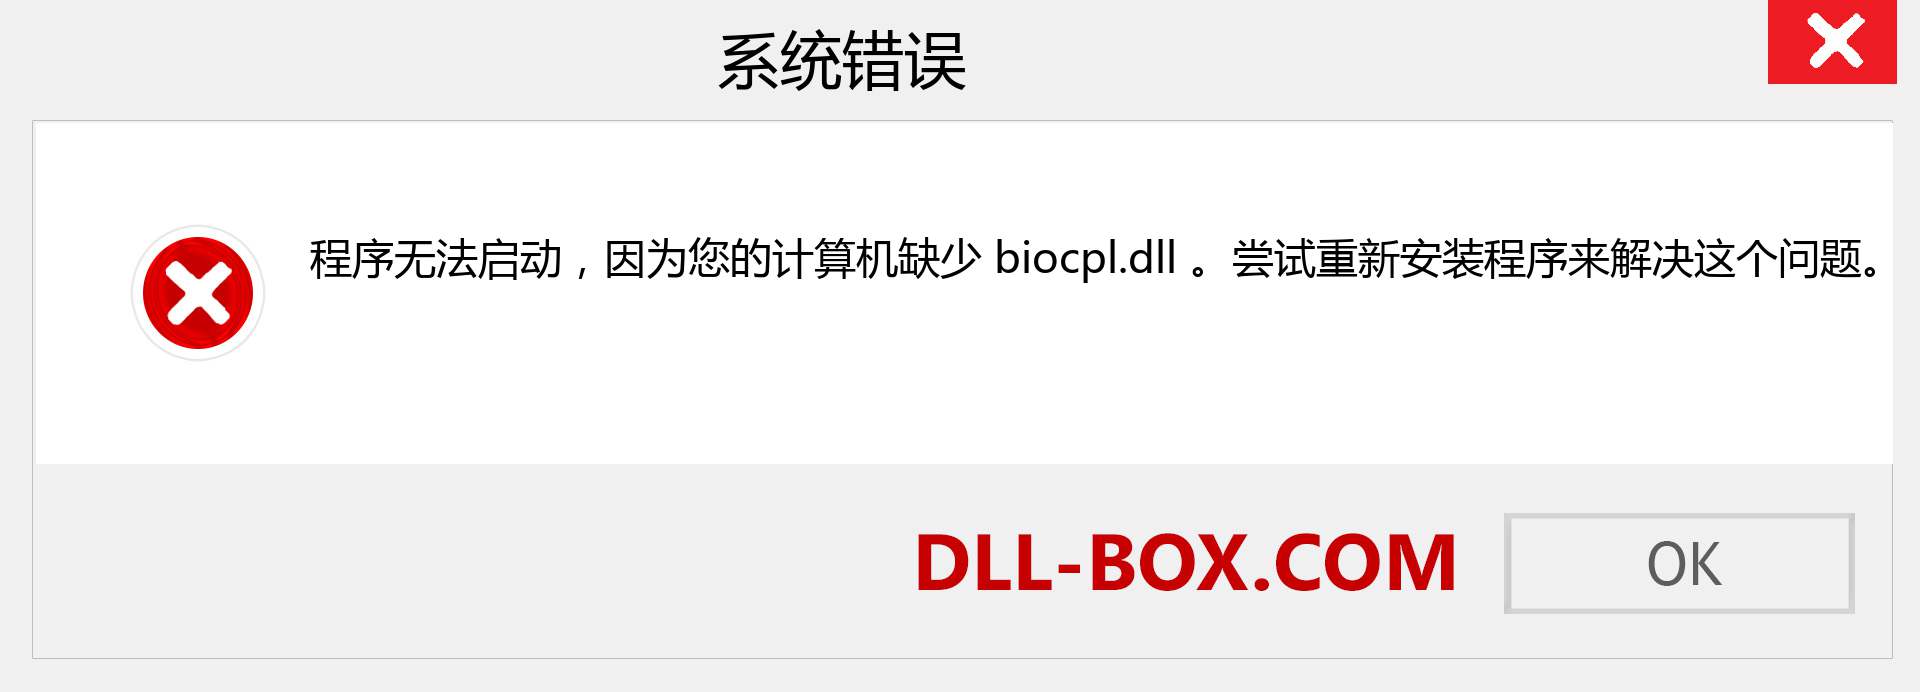 biocpl.dll 文件丢失？。 适用于 Windows 7、8、10 的下载 - 修复 Windows、照片、图像上的 biocpl dll 丢失错误